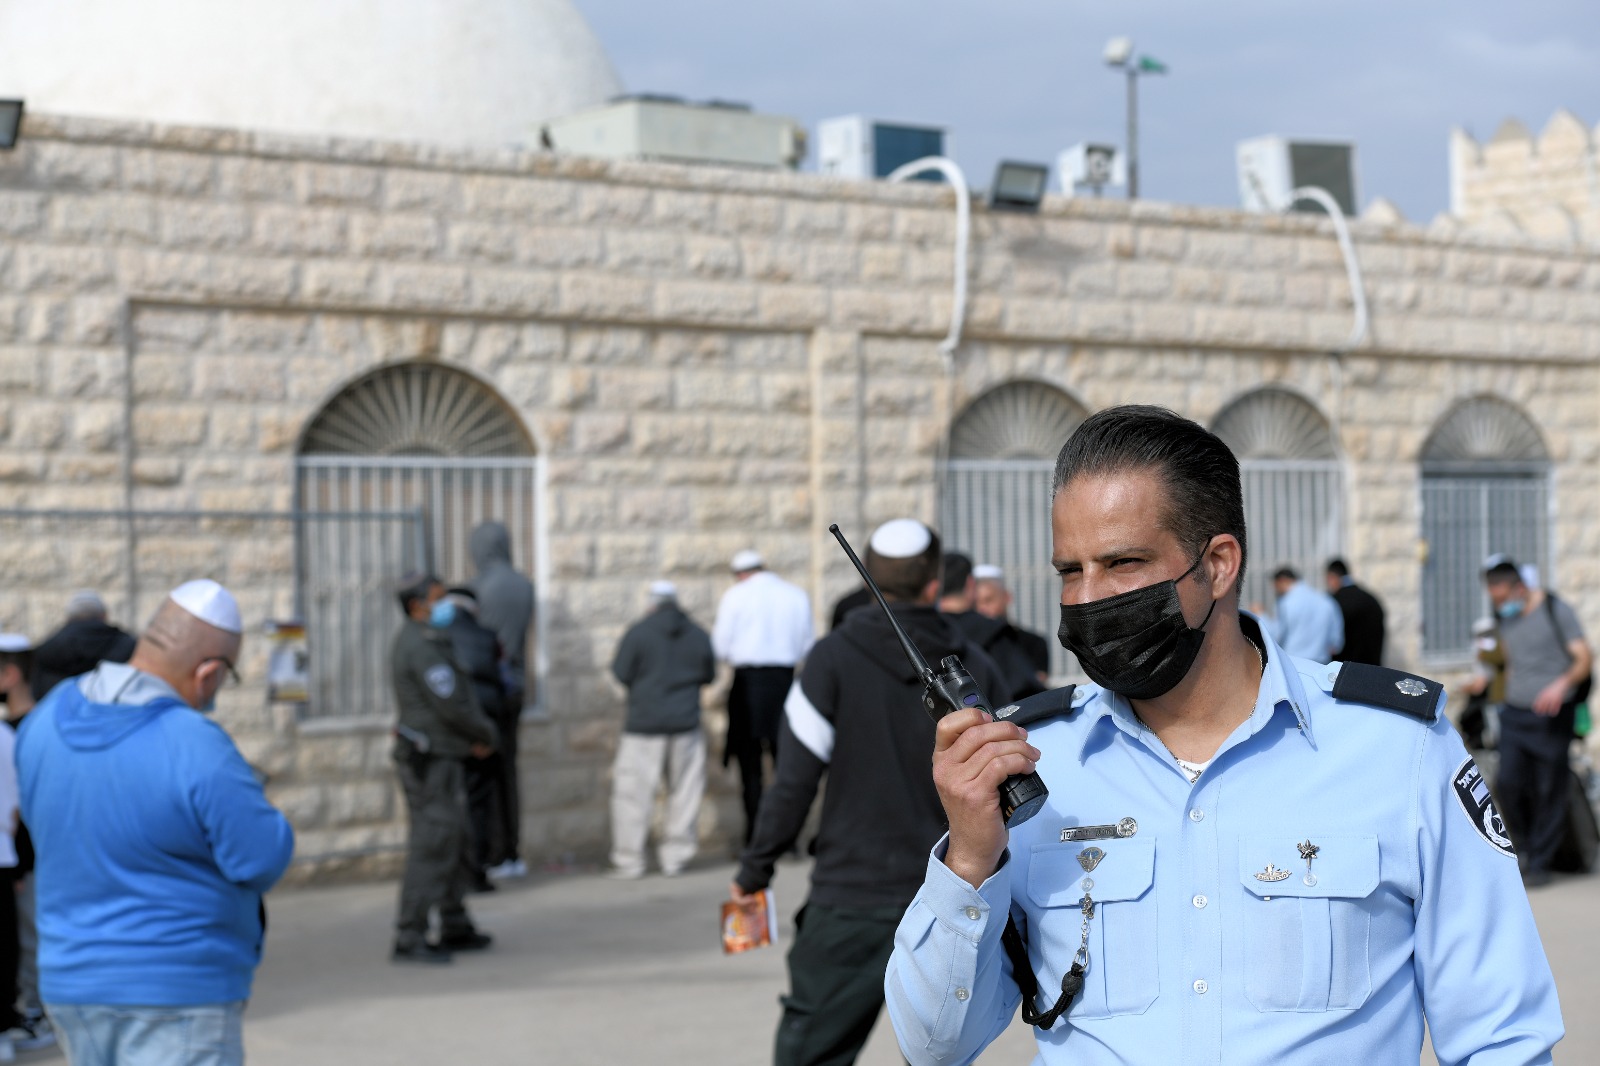 היערכות משטרתית באיזור האירוע (צילום: משטרת ישראל)